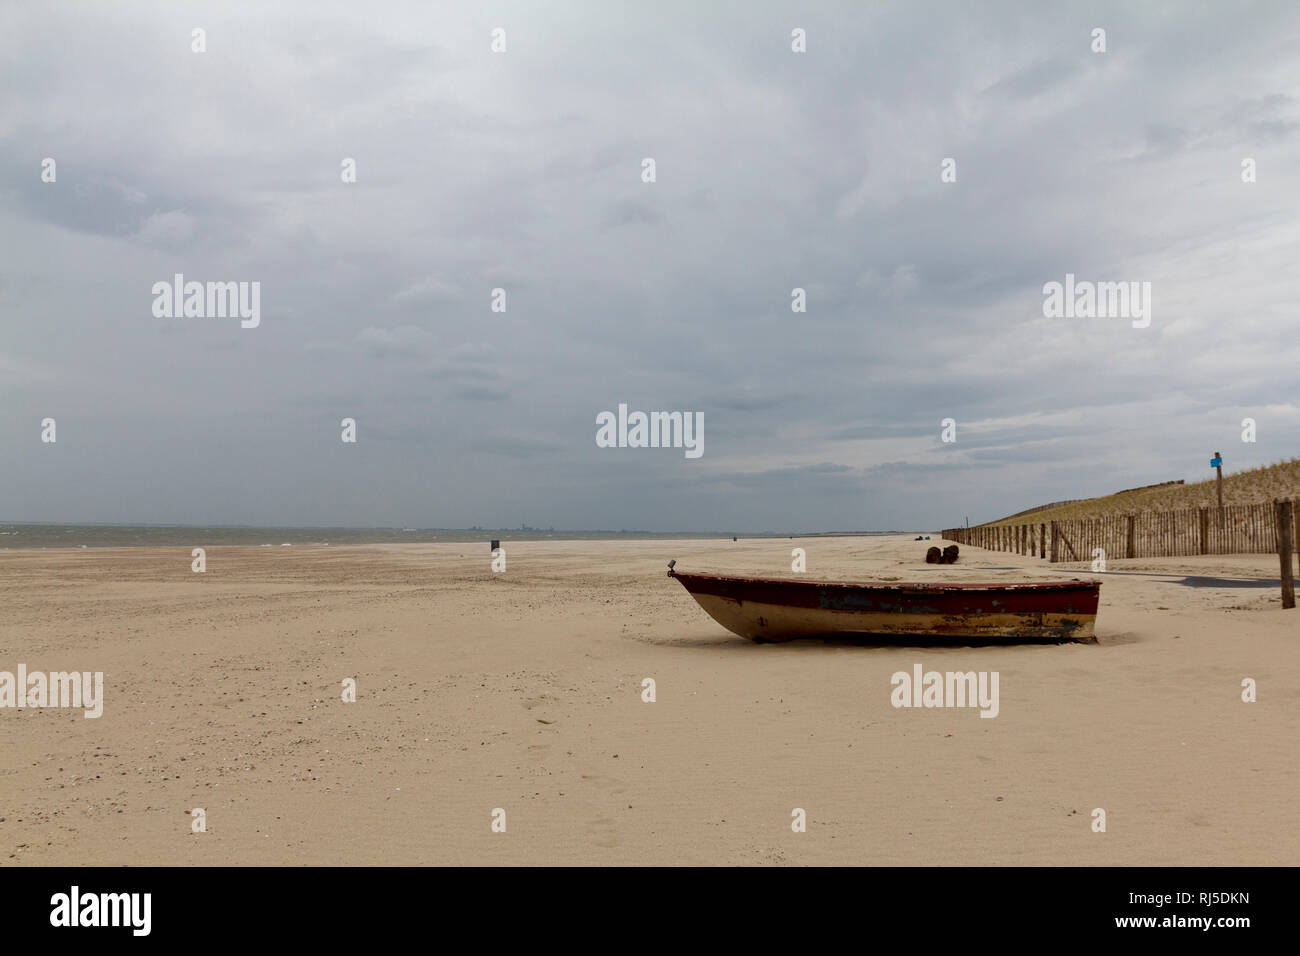 Boot am Strand in Cadzand, an der Nordsee, menschenleer, friedlich, die Ruhe und den Urlaub genie?en, Stock Photo